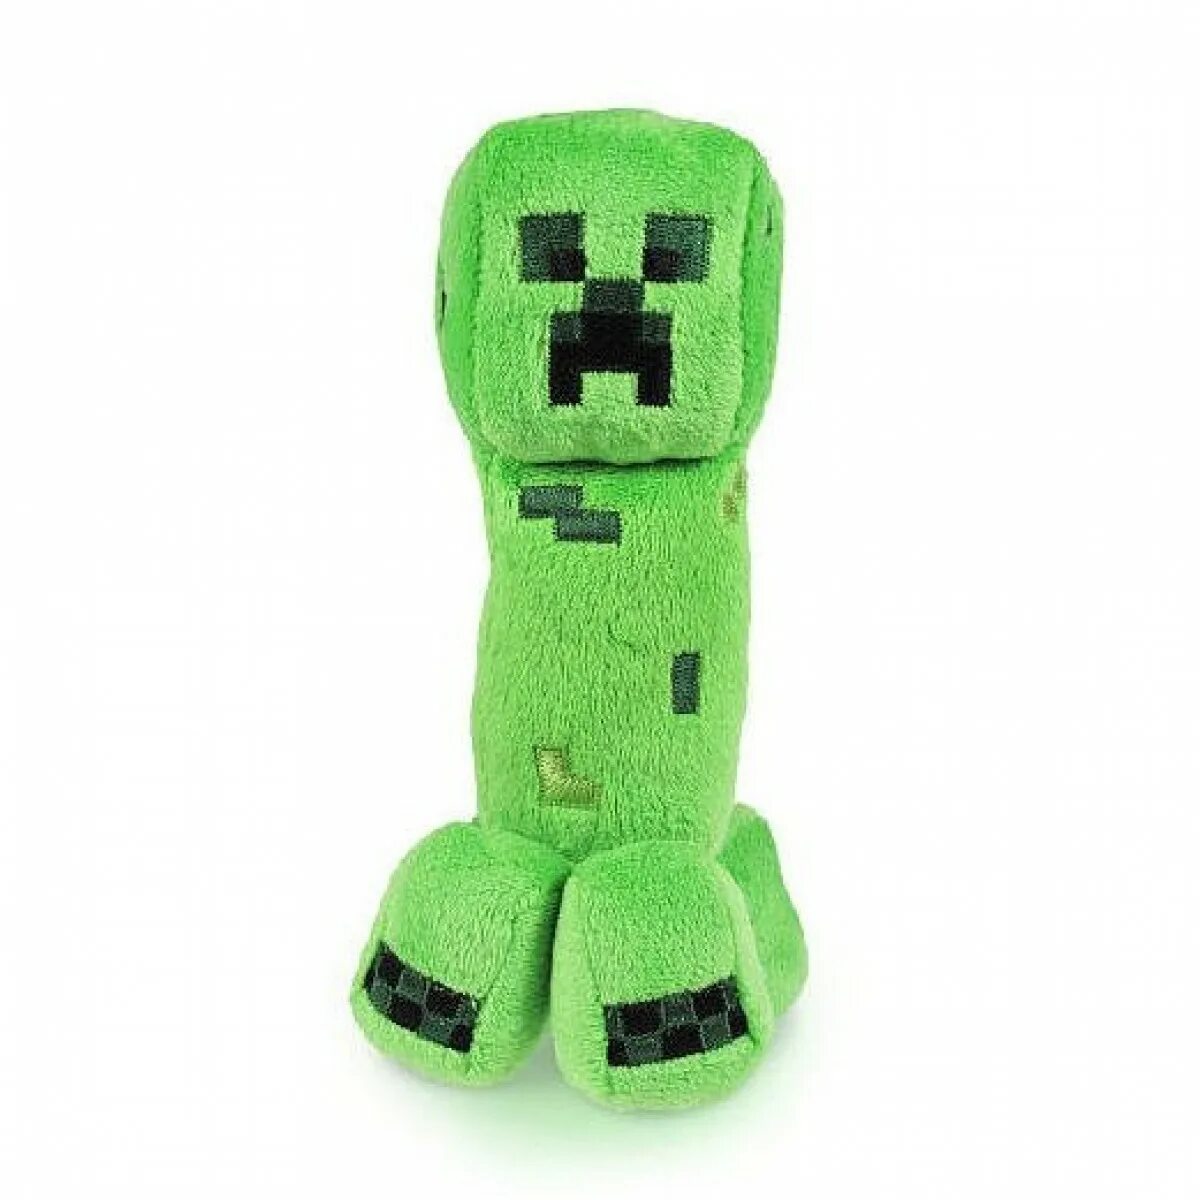 Купить мягкую игрушку майнкрафт. Мягкая игрушка Jazwares Minecraft КРИПЕР 18 см. Мягкая игрушка Jinx Minecraft КРИПЕР 18 см. Мягкая игрушка Minecraft 18см тм16522. КРИПЕР майнкрафт игрушка мягкая.